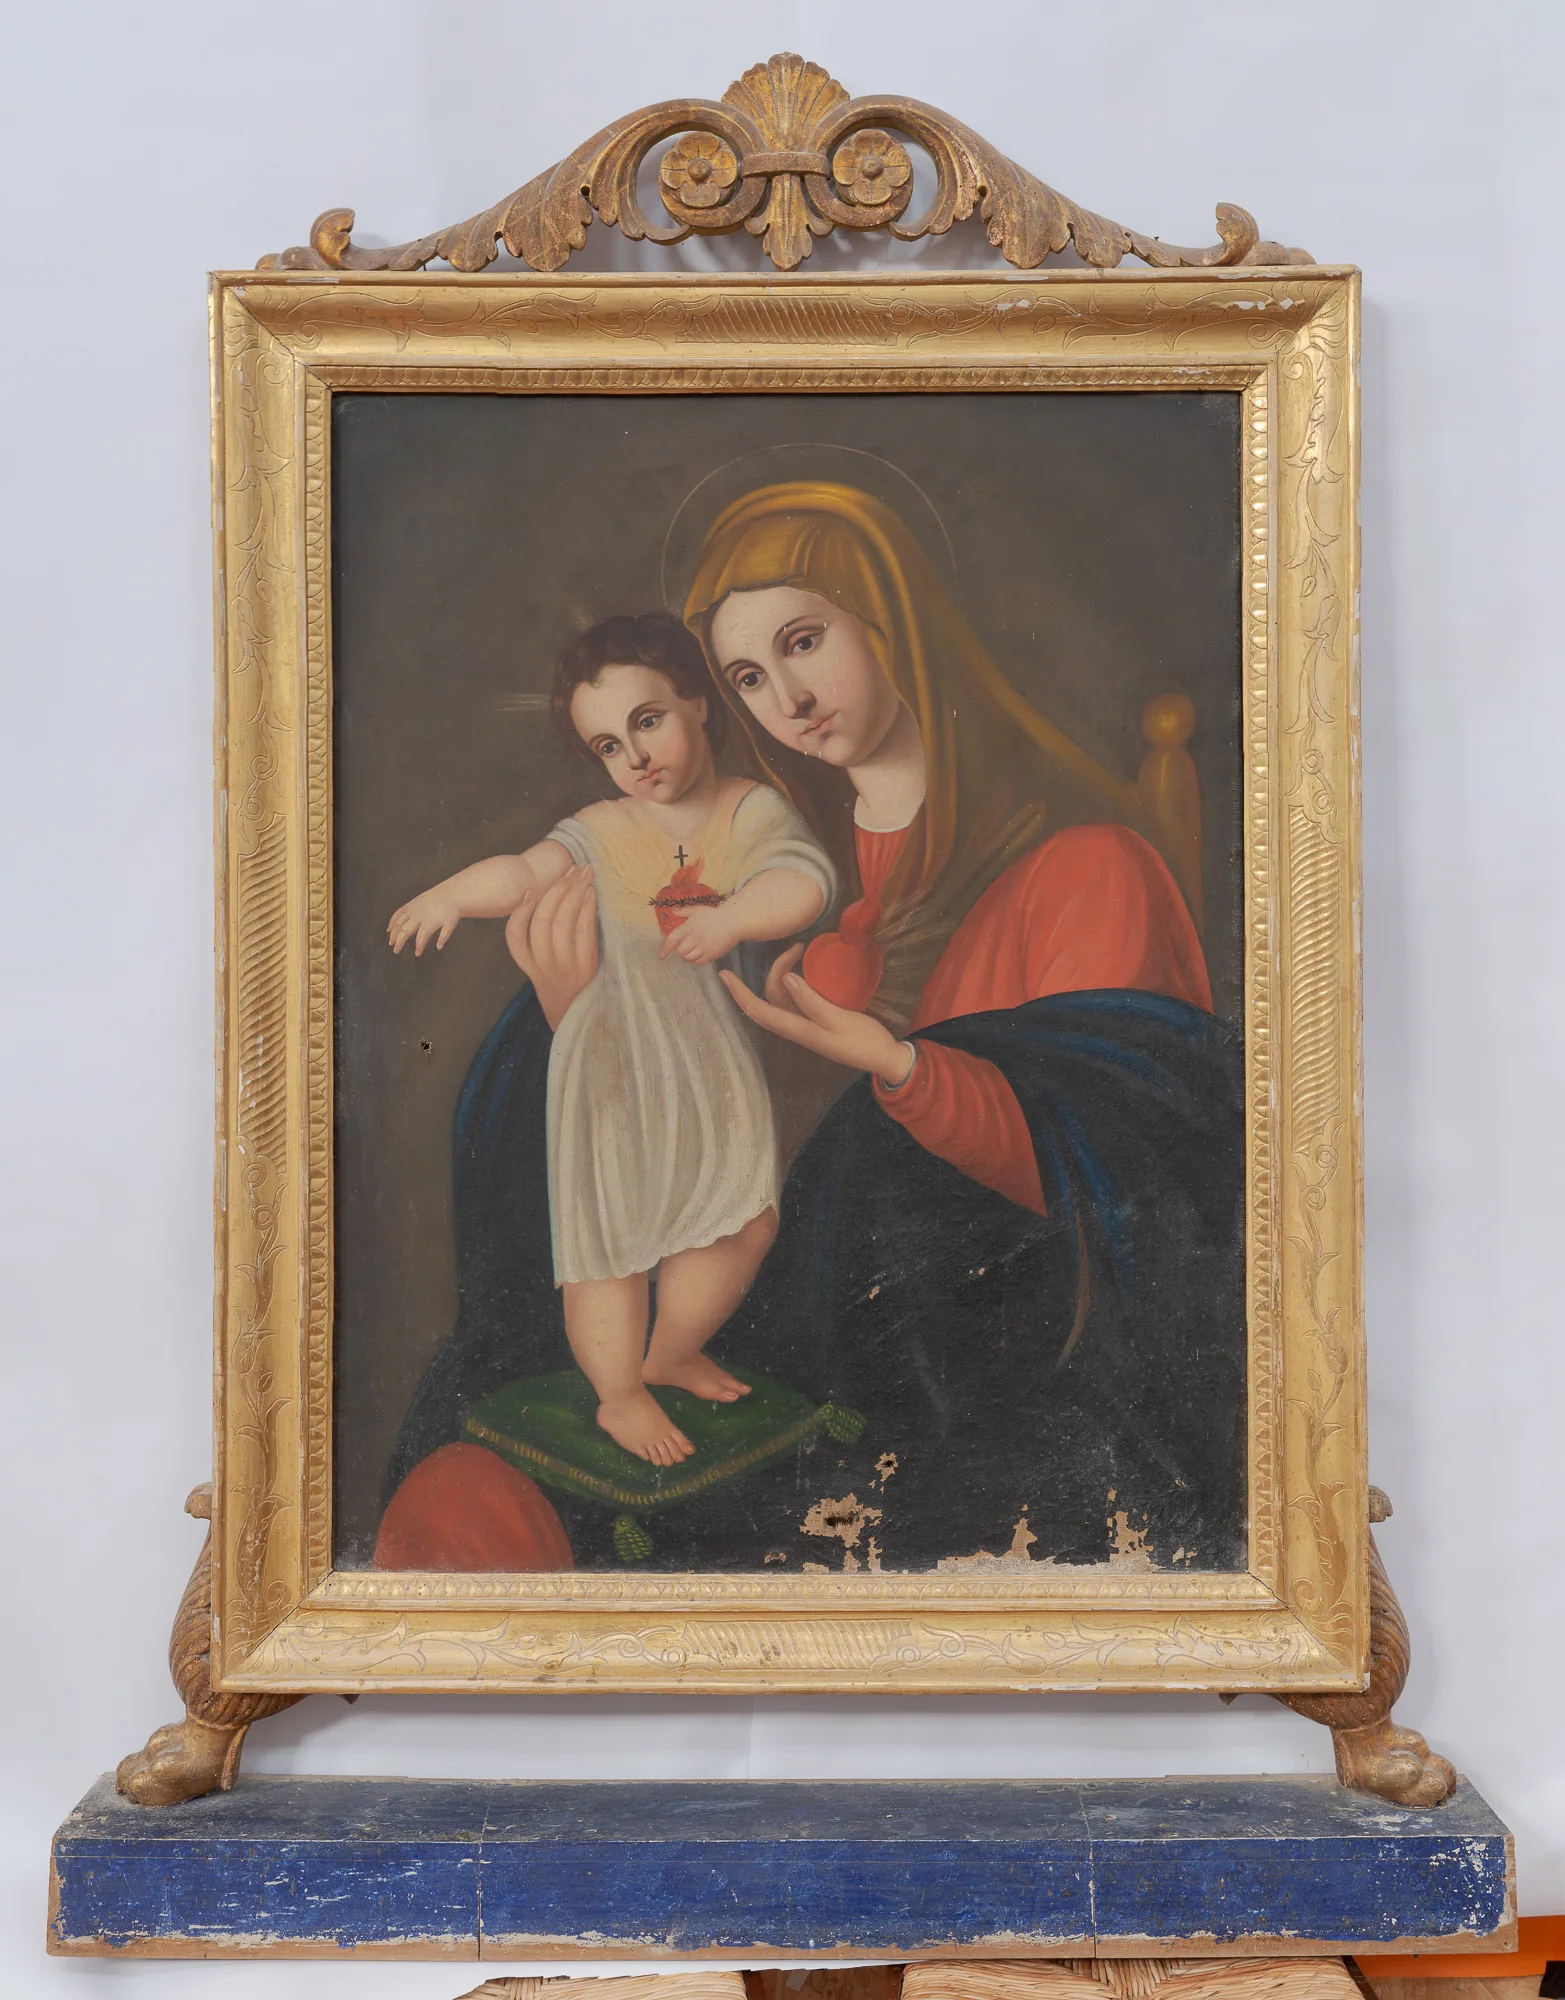 Vergine con bambino